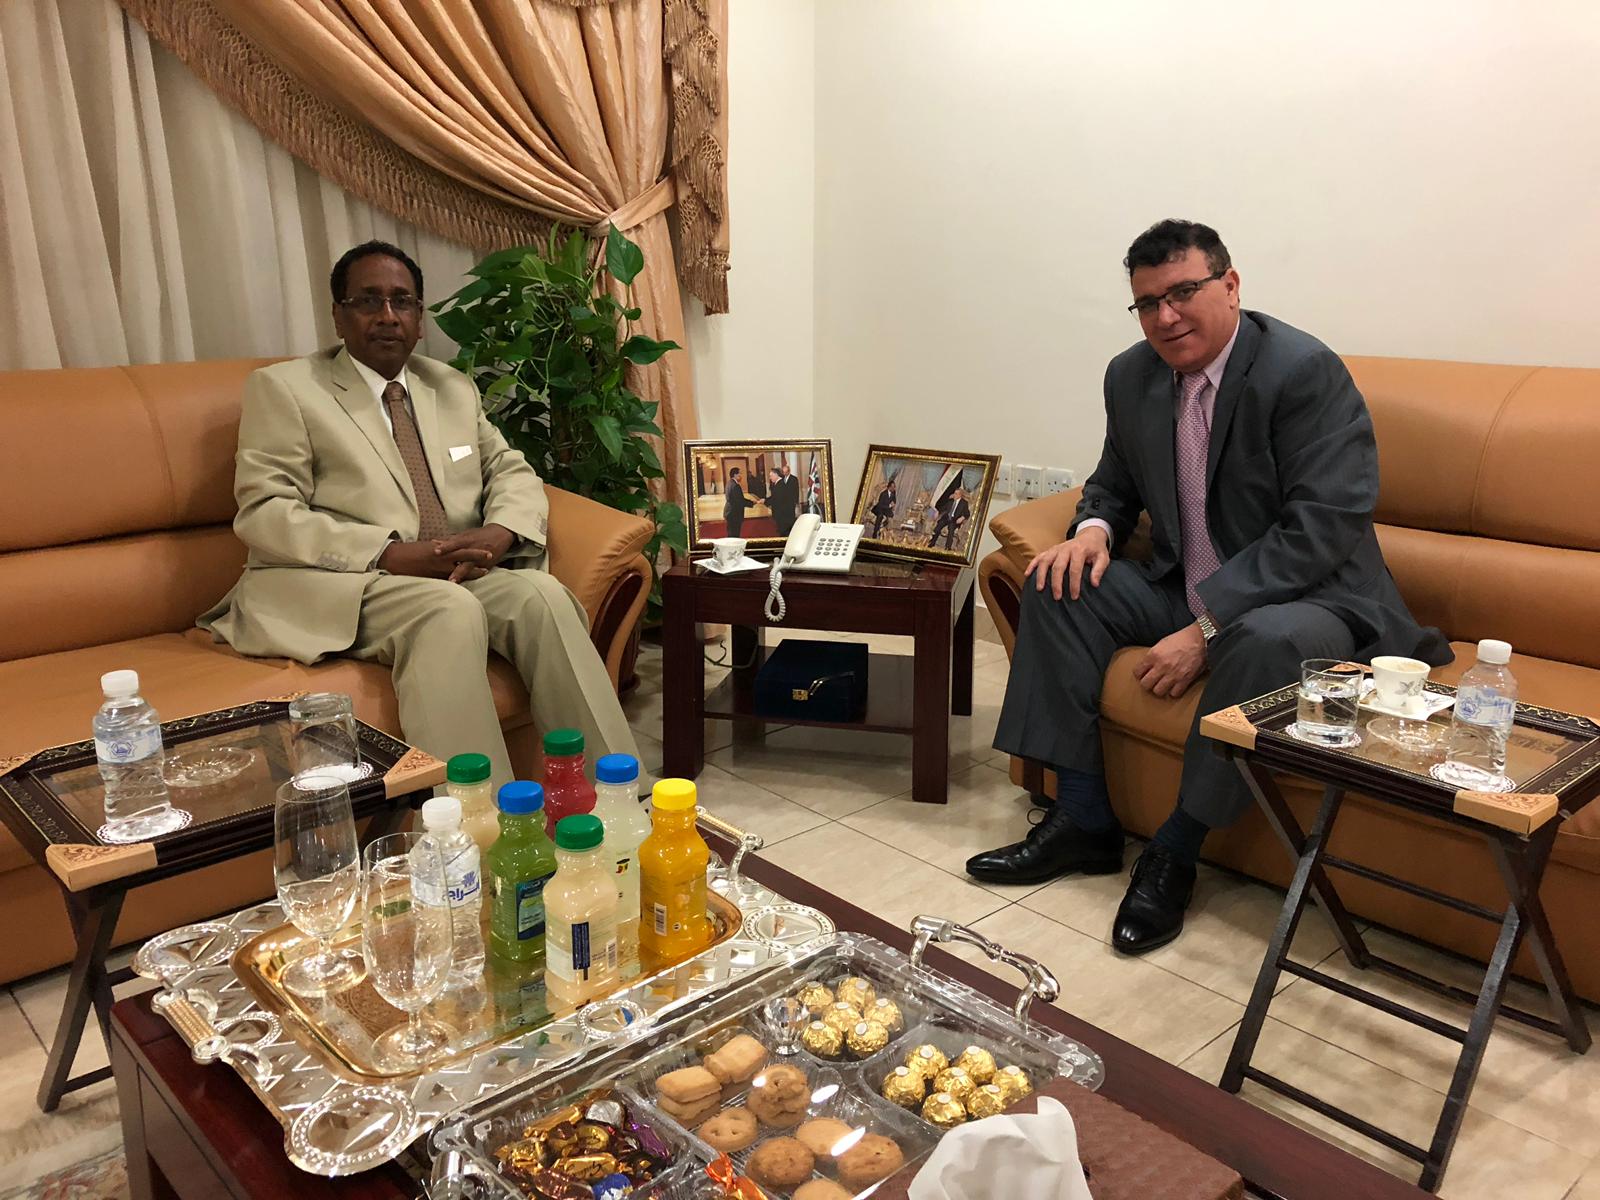 زيارة سفير الجمهورية الجزائرية الديمقراطية الشعبية لدى دولة الكويت